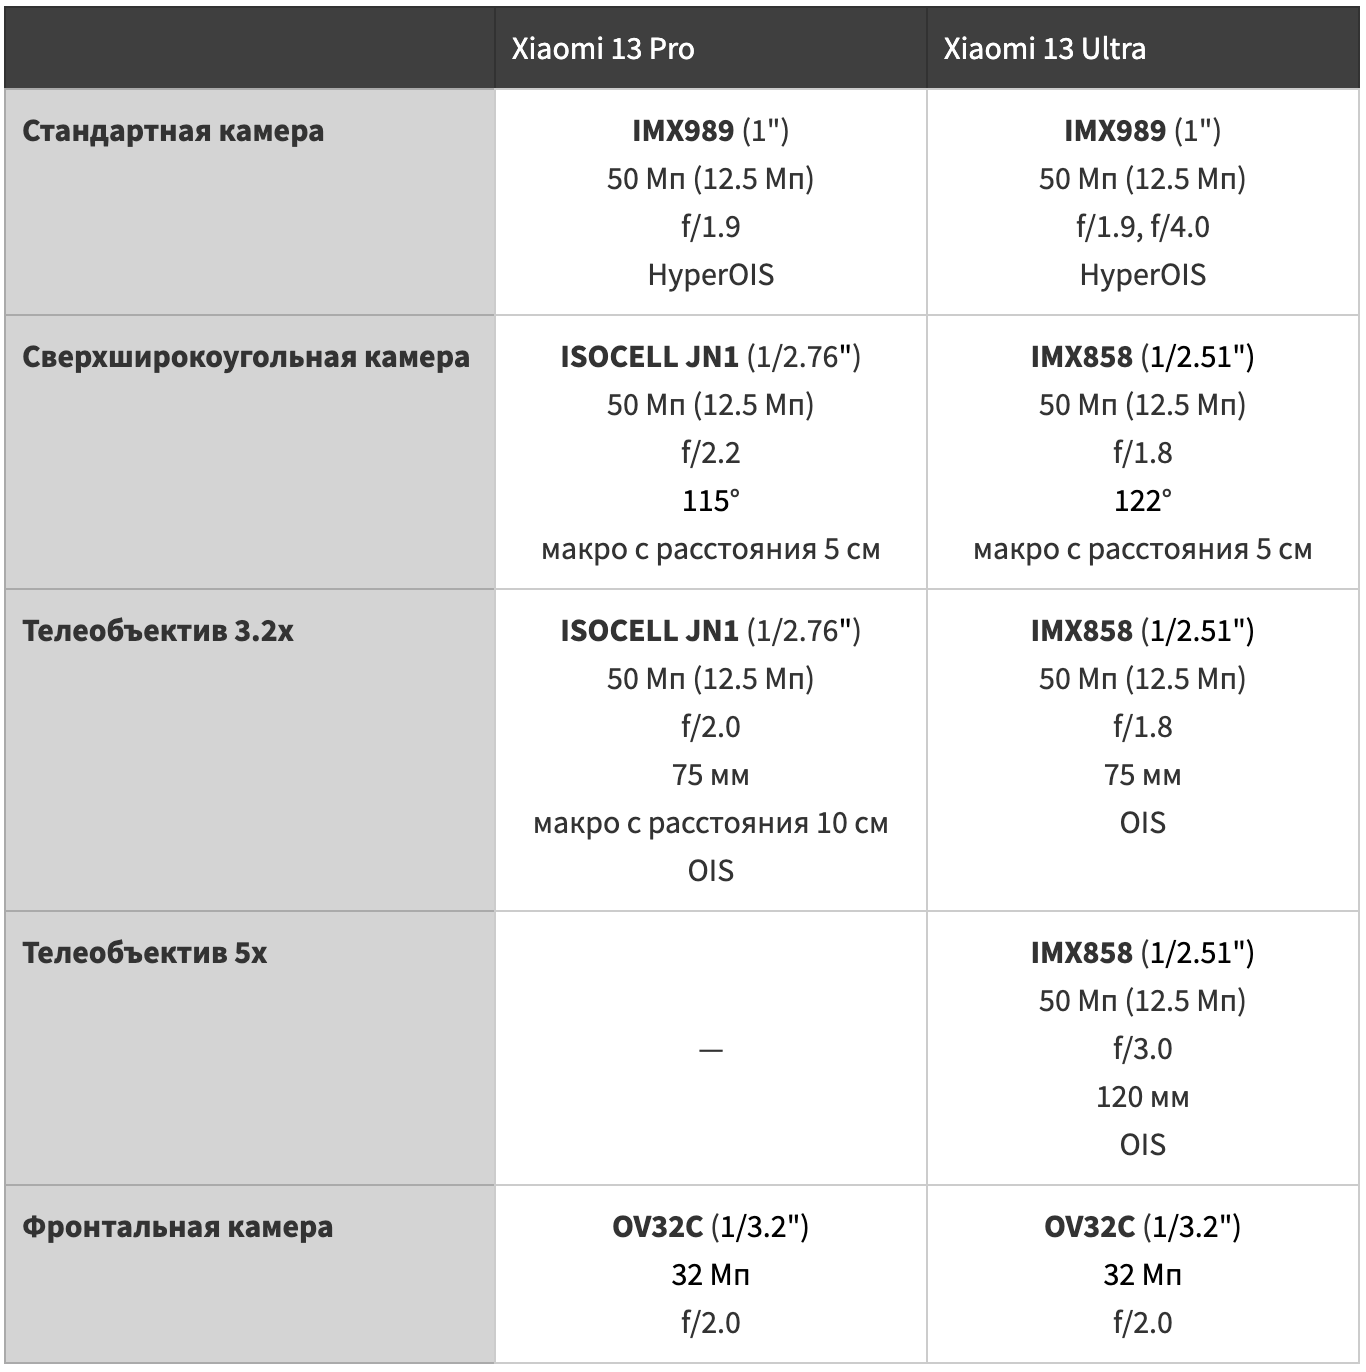 Сравнительная таблица характеристик камер Xiaomi 13 Pro и Xiaomi 13 Ultra